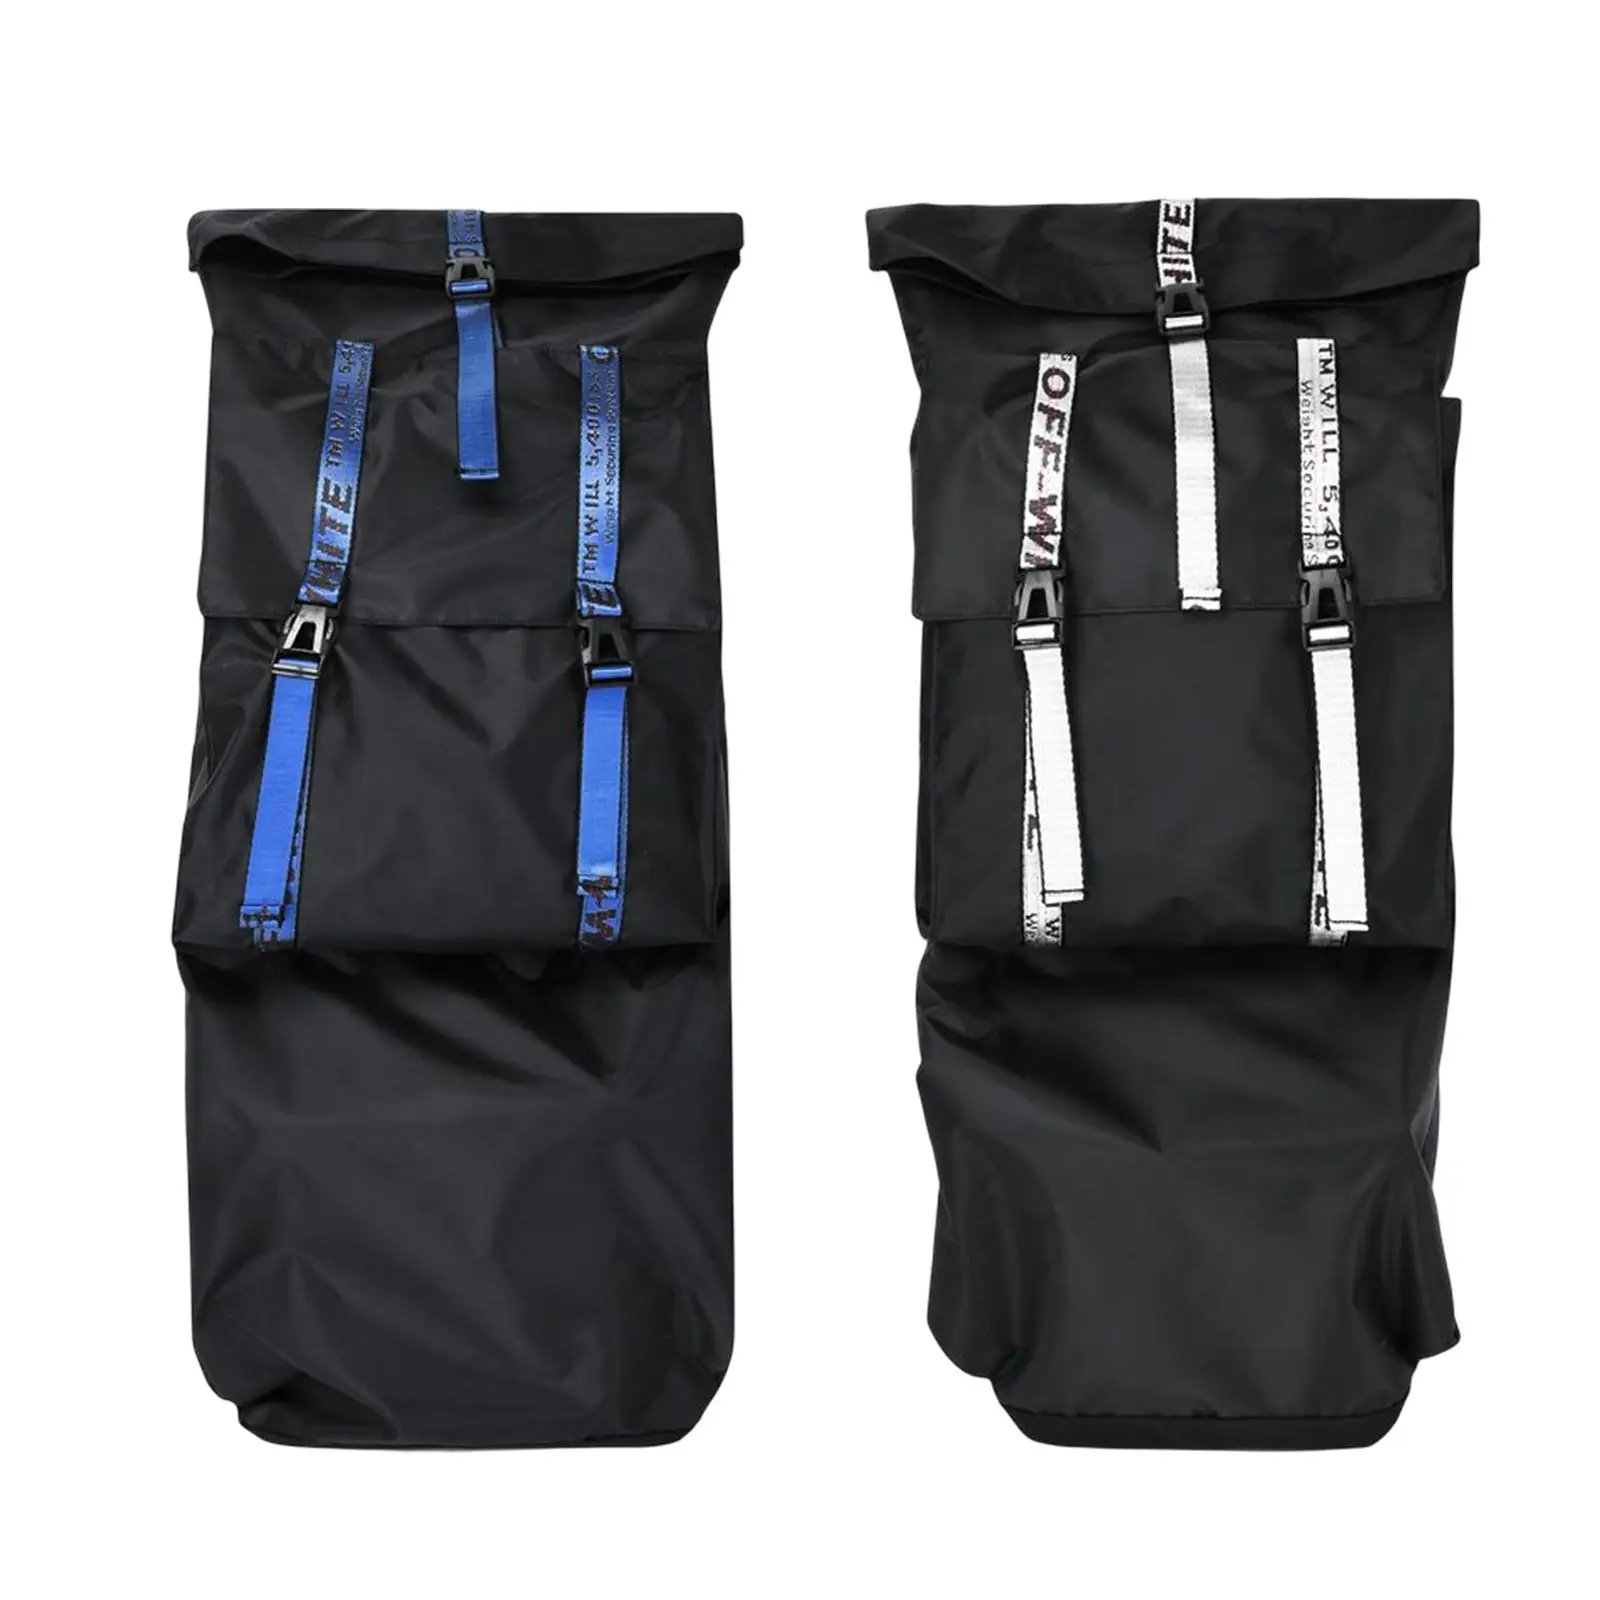 Skateboard Bag with Adjustable Shoulder Strap Surfboard Carrier Water Resistant Universal Skateboard Backpacks for Travel